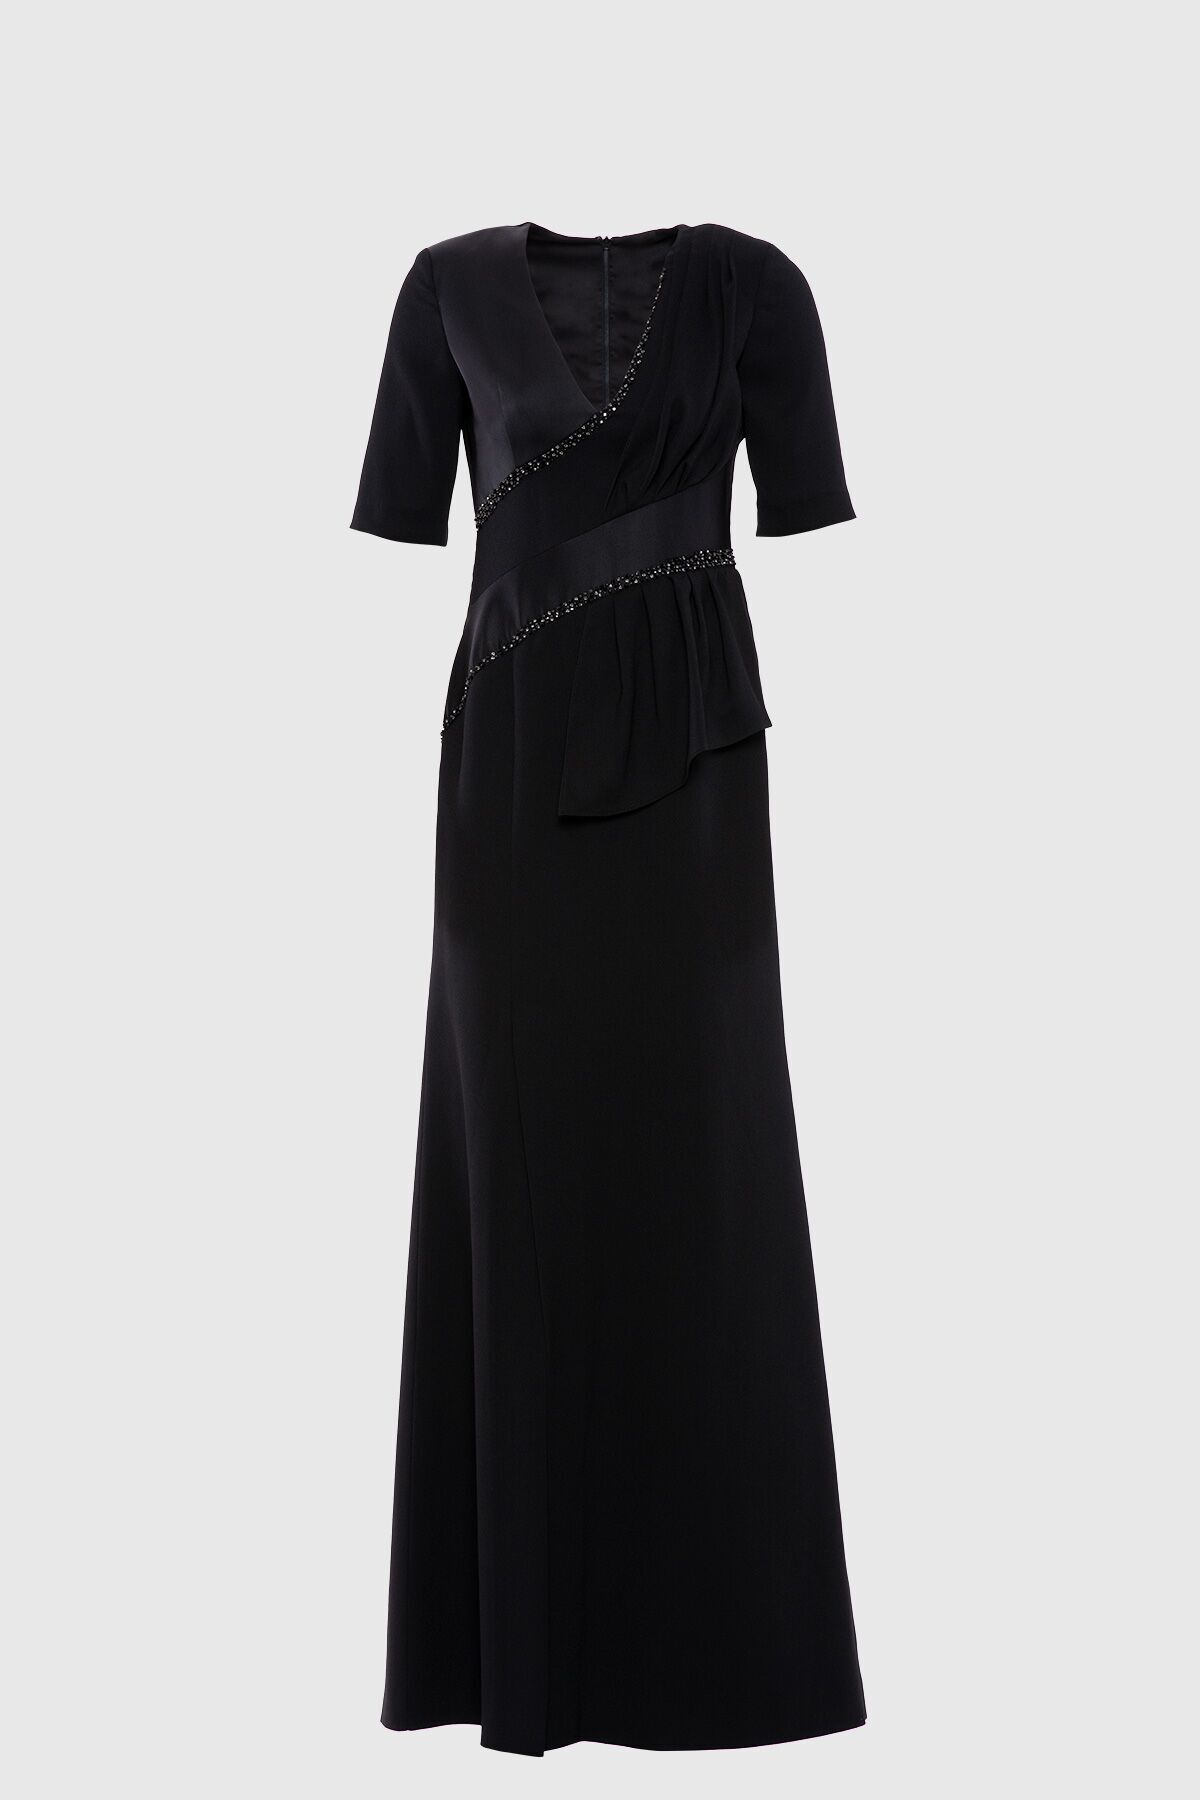 GIZIA Işleme Detaylı Şık Siyah Abiye Elbise